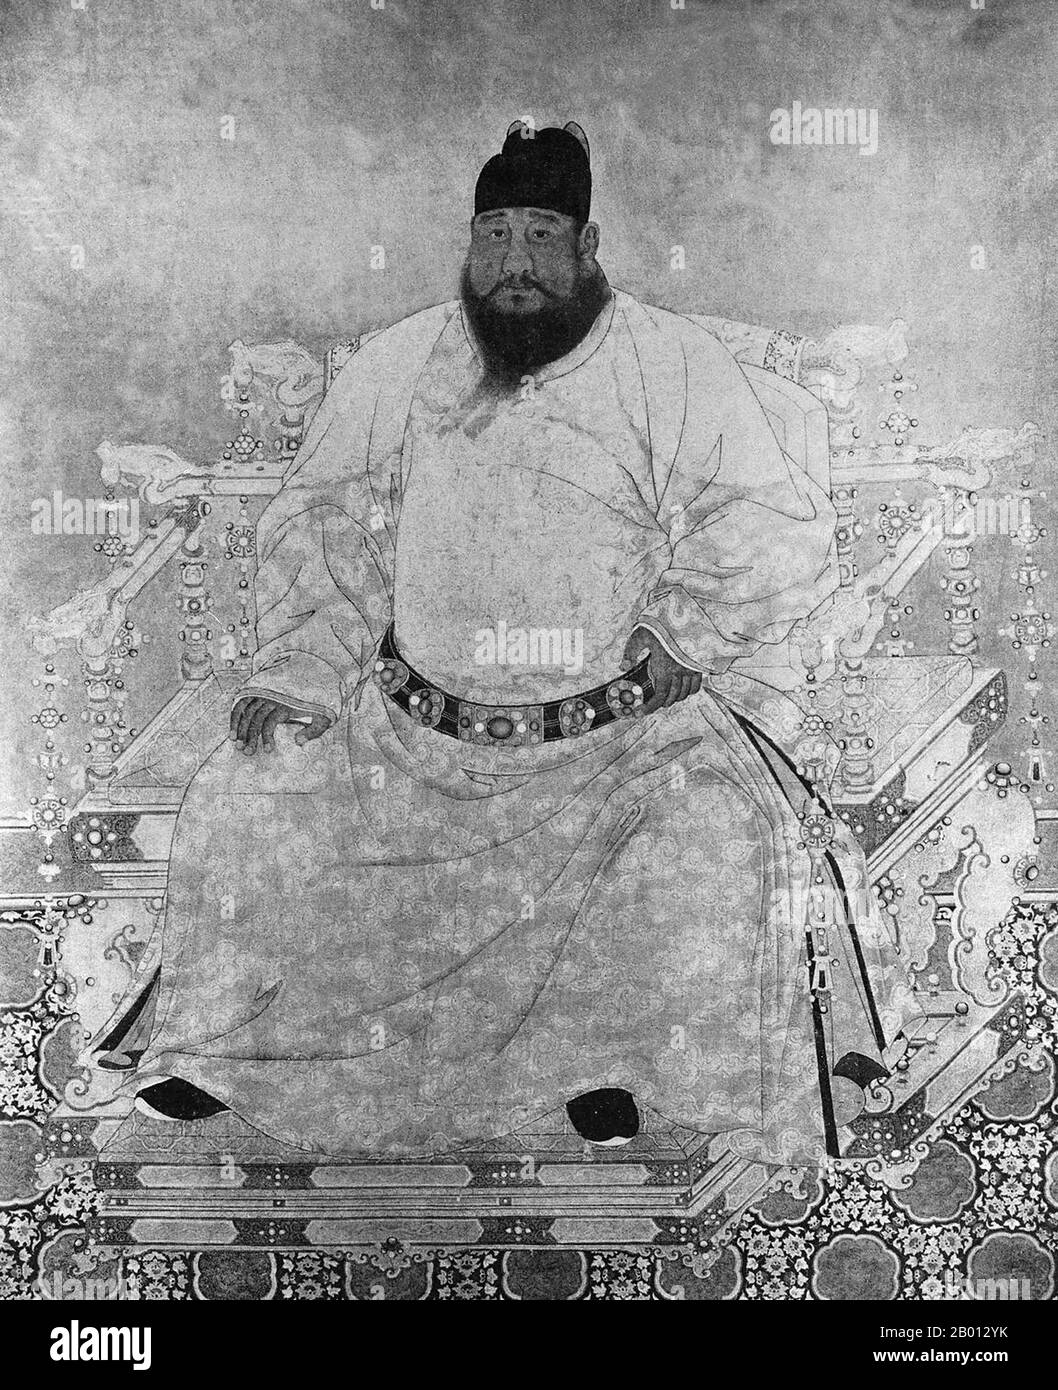 Cina: Imperatore Xuande, 5 ° sovrano della dinastia Ming (r. 1425-1435). Pittura a chiocciola sospesa, XV-XVII secolo. L'imperatore Xuande (1399-1435), nome personale Zhu Zhani e nome del tempio Xuanzong, fu il quinto imperatore di Ming Cina. Il suo nome d'epoca significa "proclamazione della virtù". L'Imperatore Xuande governò un periodo di notevole pace senza problemi esterni o interni significativi. Gli storici più tardi hanno considerato il suo regno come l'età d'oro della dinastia Ming. Foto Stock